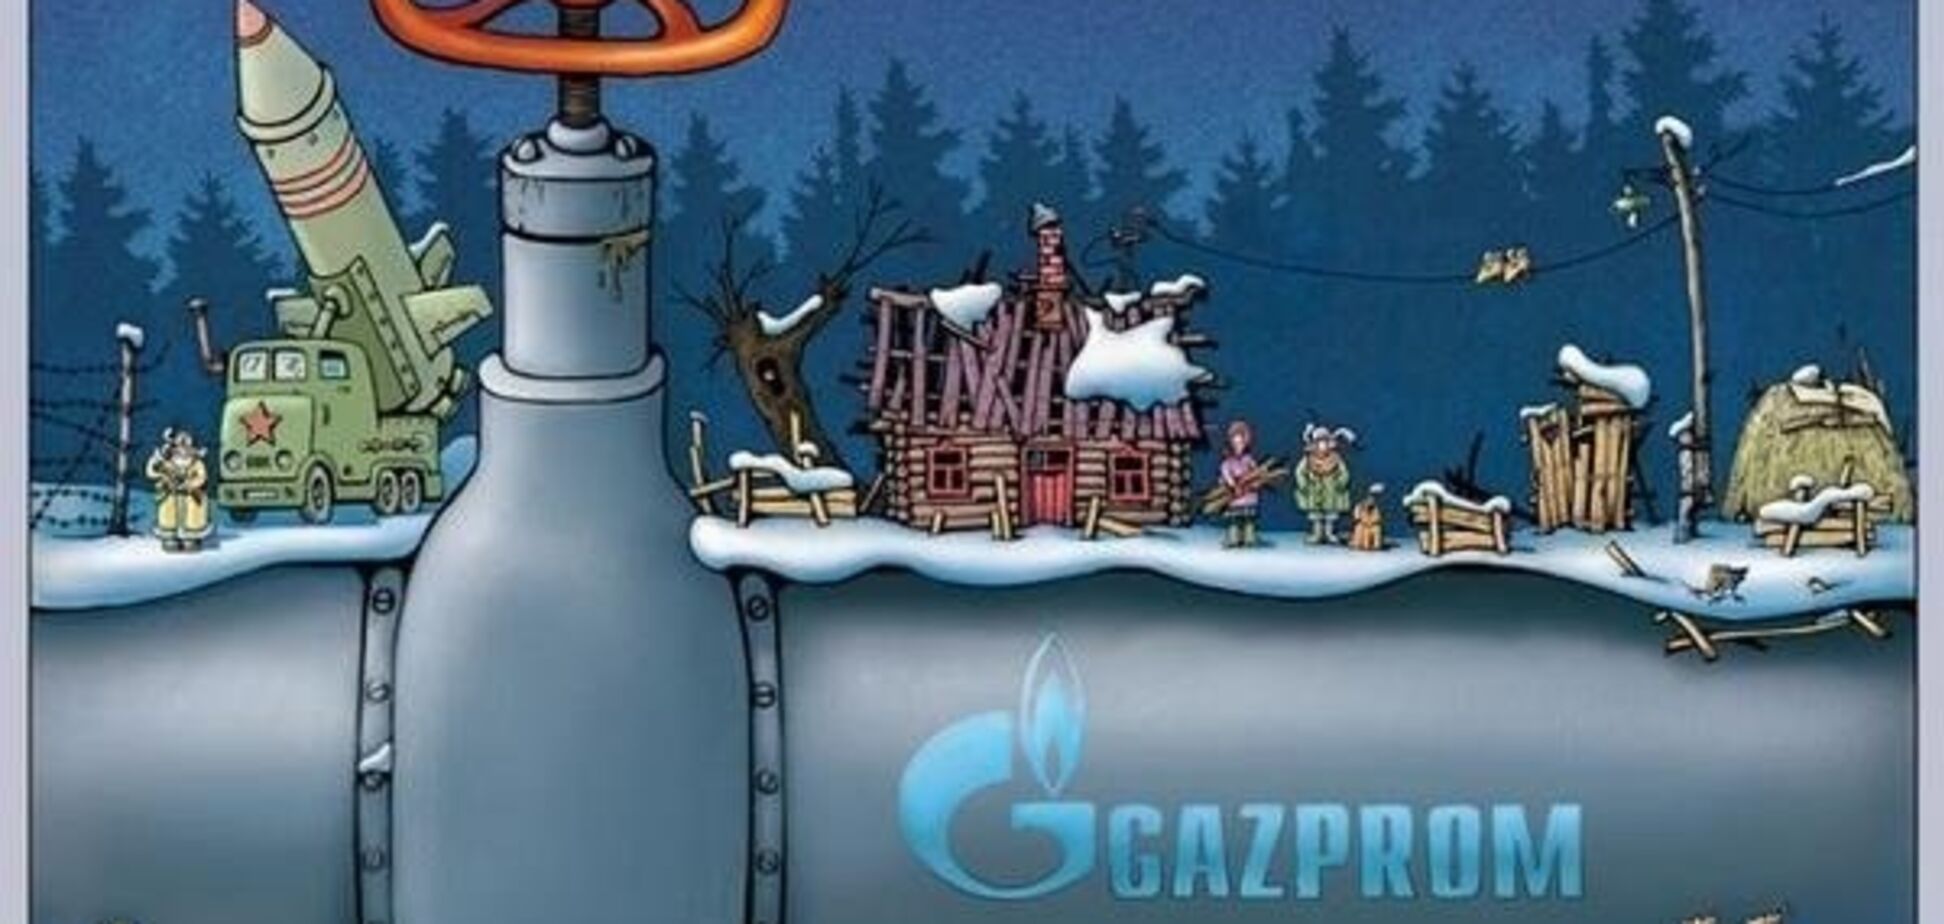 Газпром карикатура